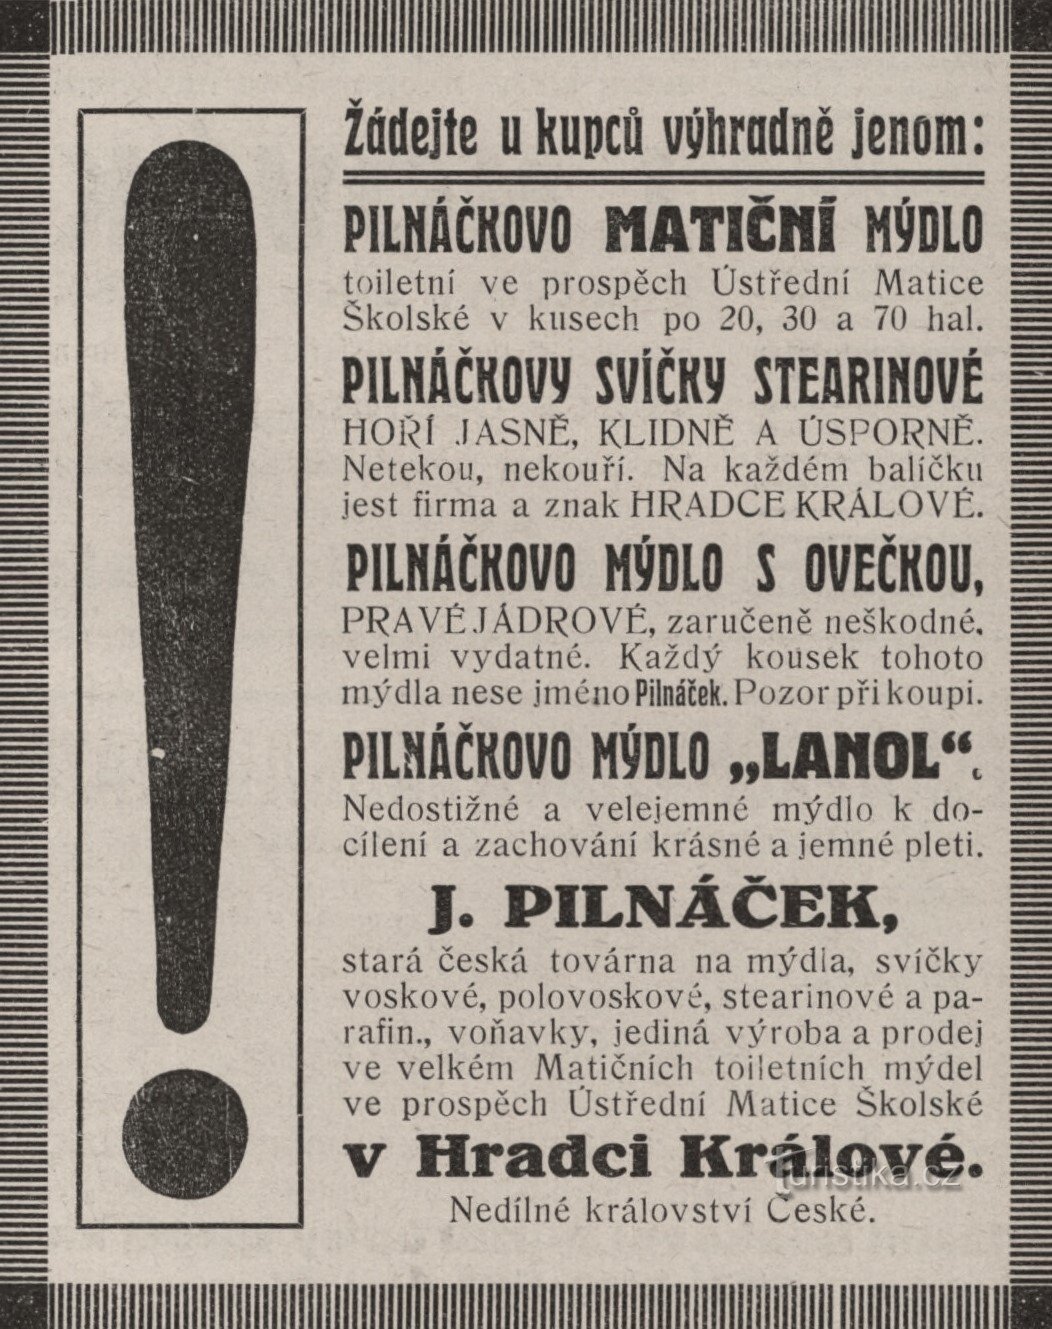 Διαφήμιση του εργοστασίου Pilnáček από το 1912